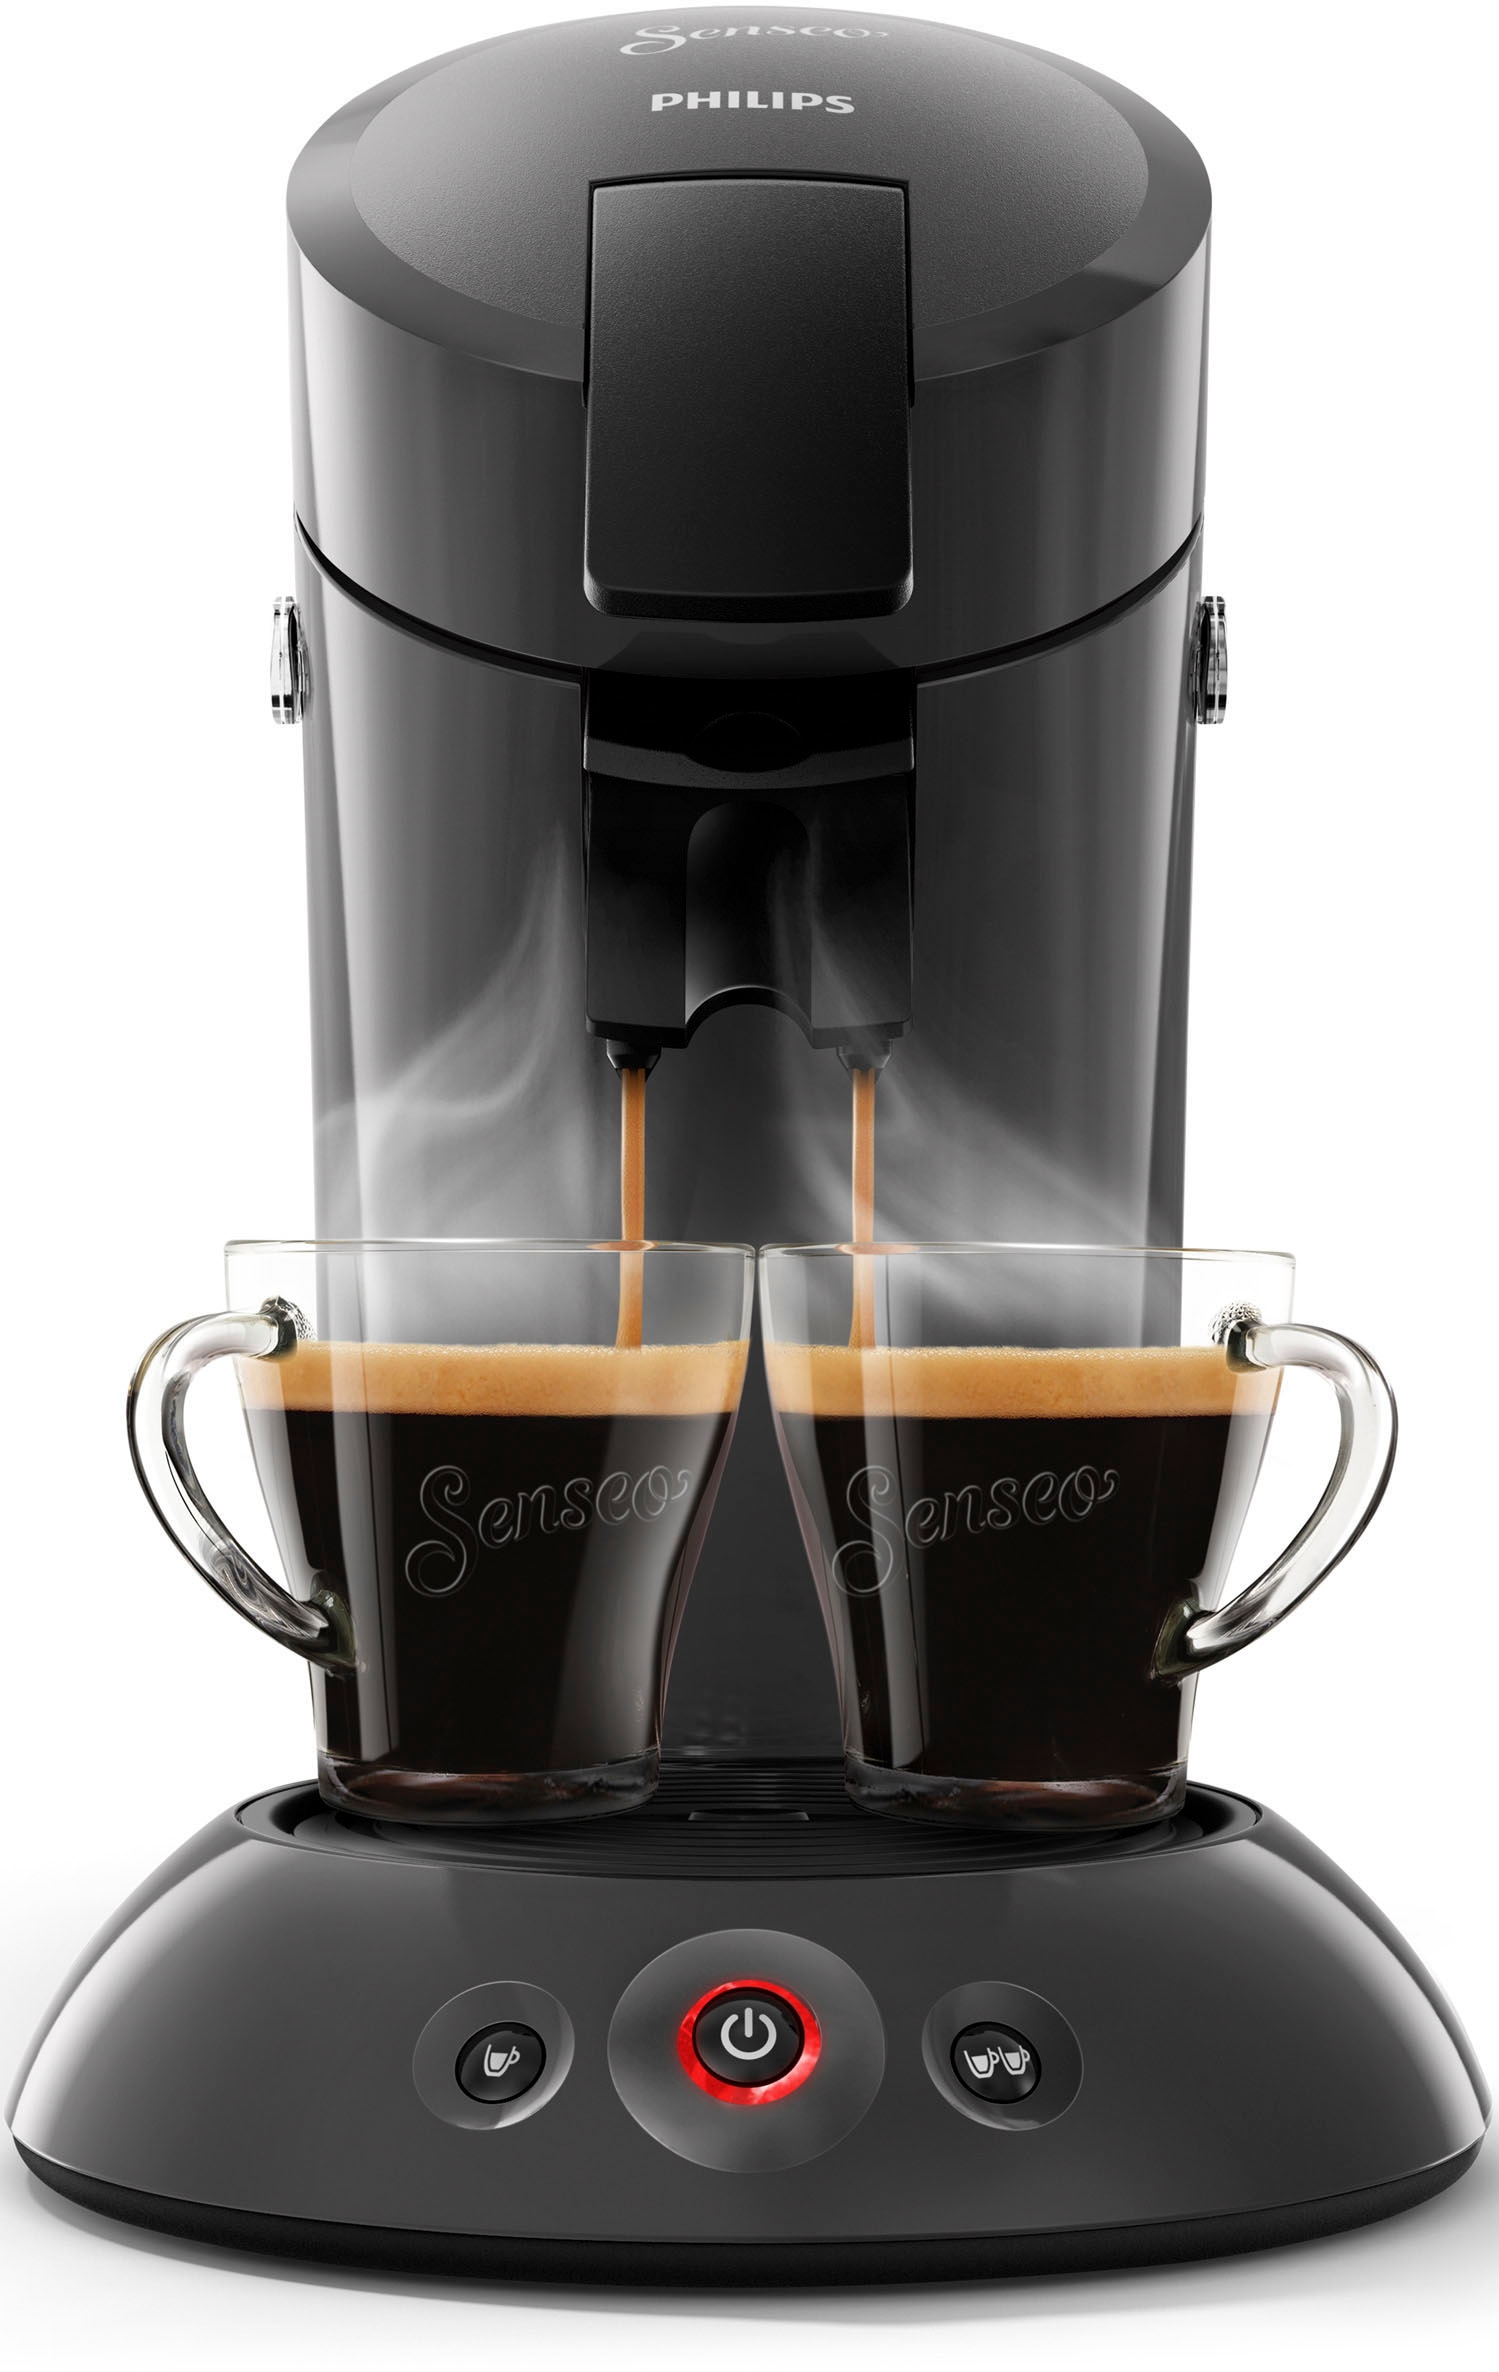 XXL HD6553/65«, Milchaufschäumer Kaffeepadmaschine im € »Original mit Garantie inkl. Jahren 3 Philips Wert 79,99 UVP von Senseo